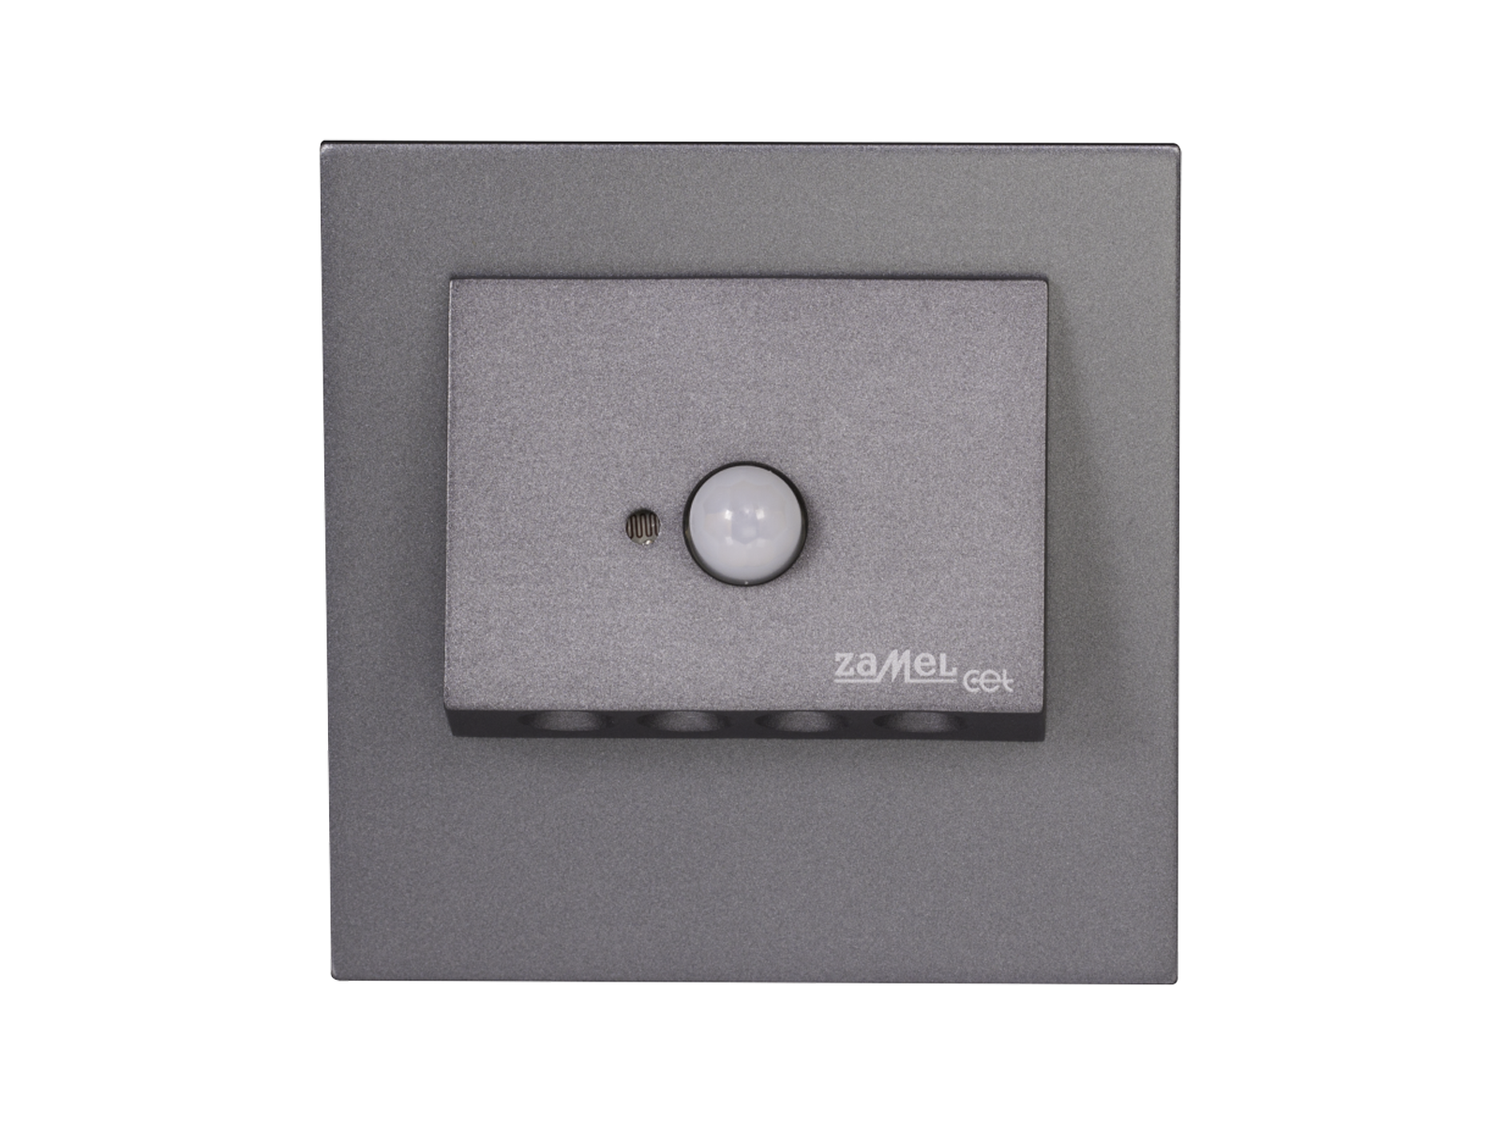 Svítidlo LED se senzorem do KU krabice LEDIX NAVI 230 V AC, grafit, teplá bílá, IP20